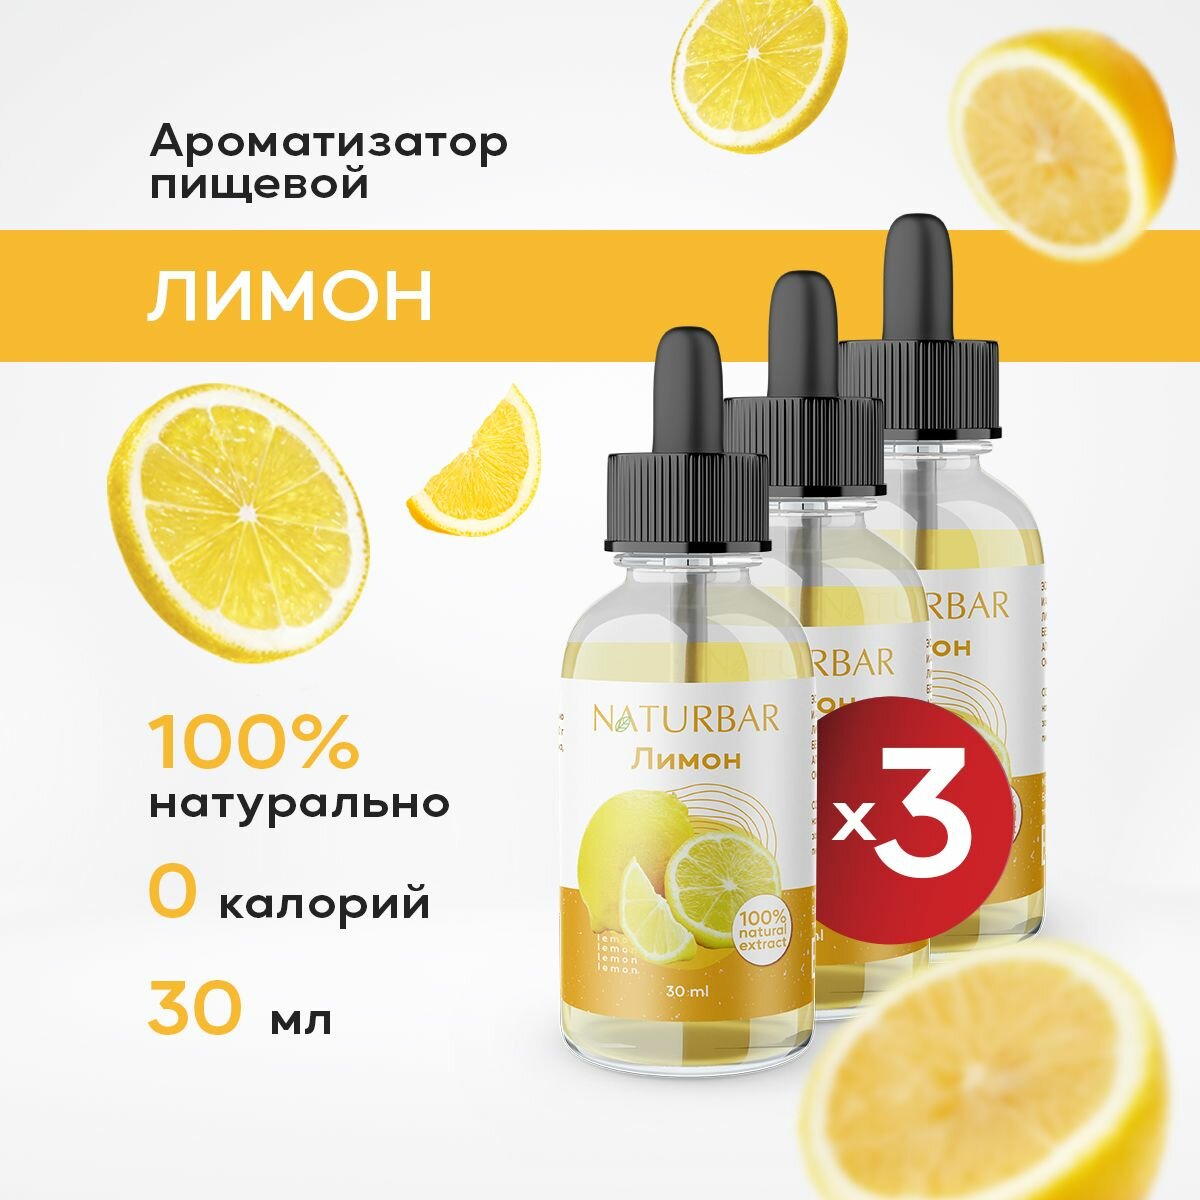 Ароматизатор пищевой натуральный лимон 30 мл (эссенция кондитерская) для выпечки, напитков - 3 шт.